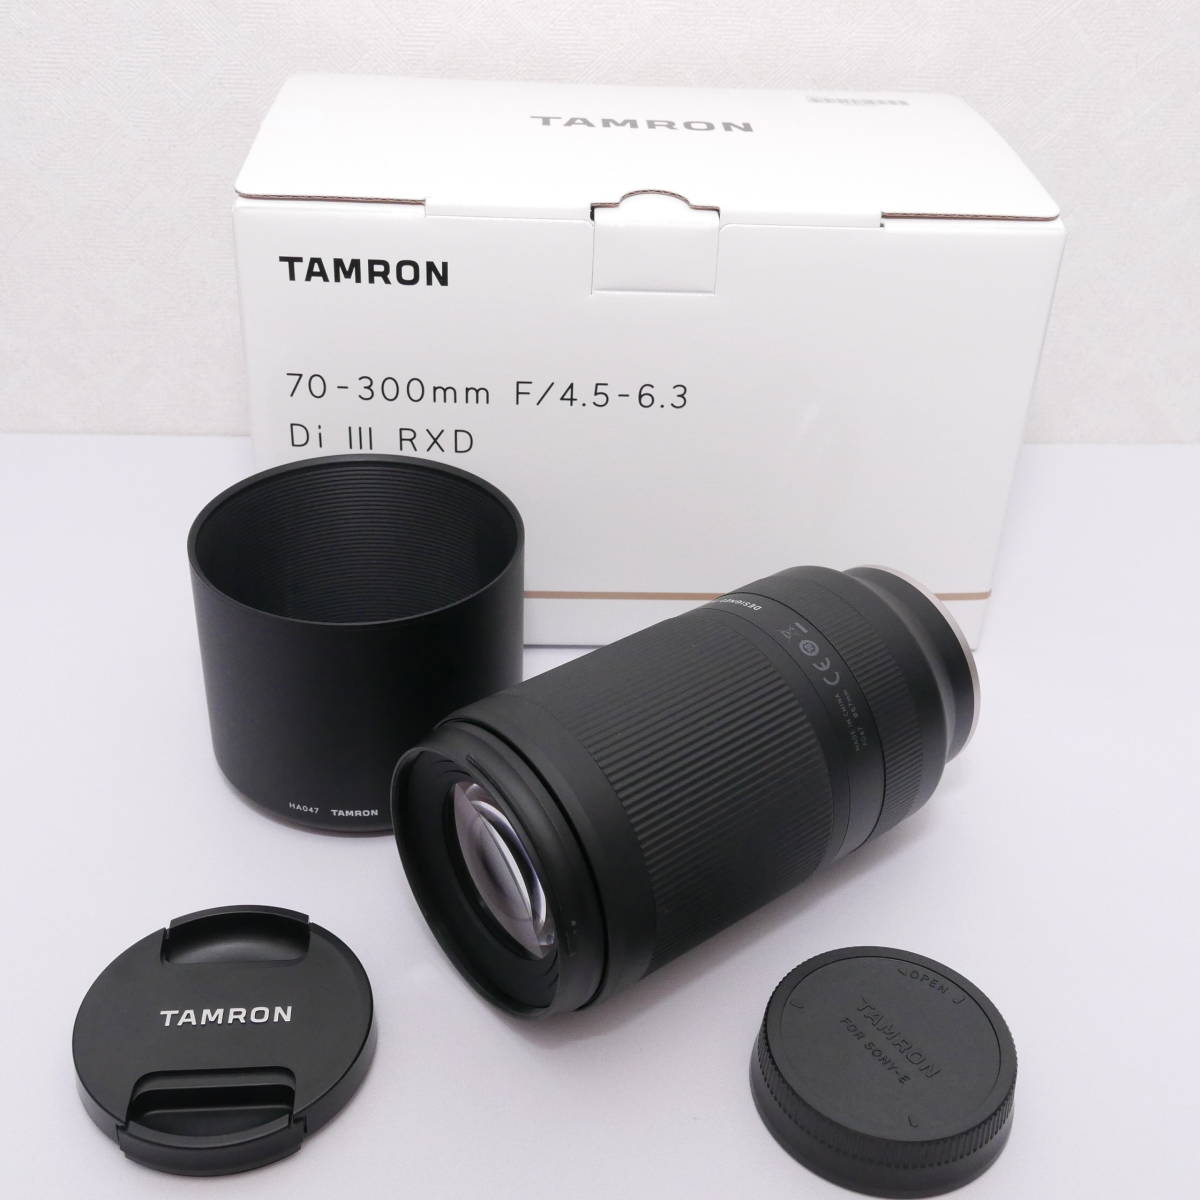 Tamron 70-300mm F/4.5-6.3 Di III RXD (Model A047)